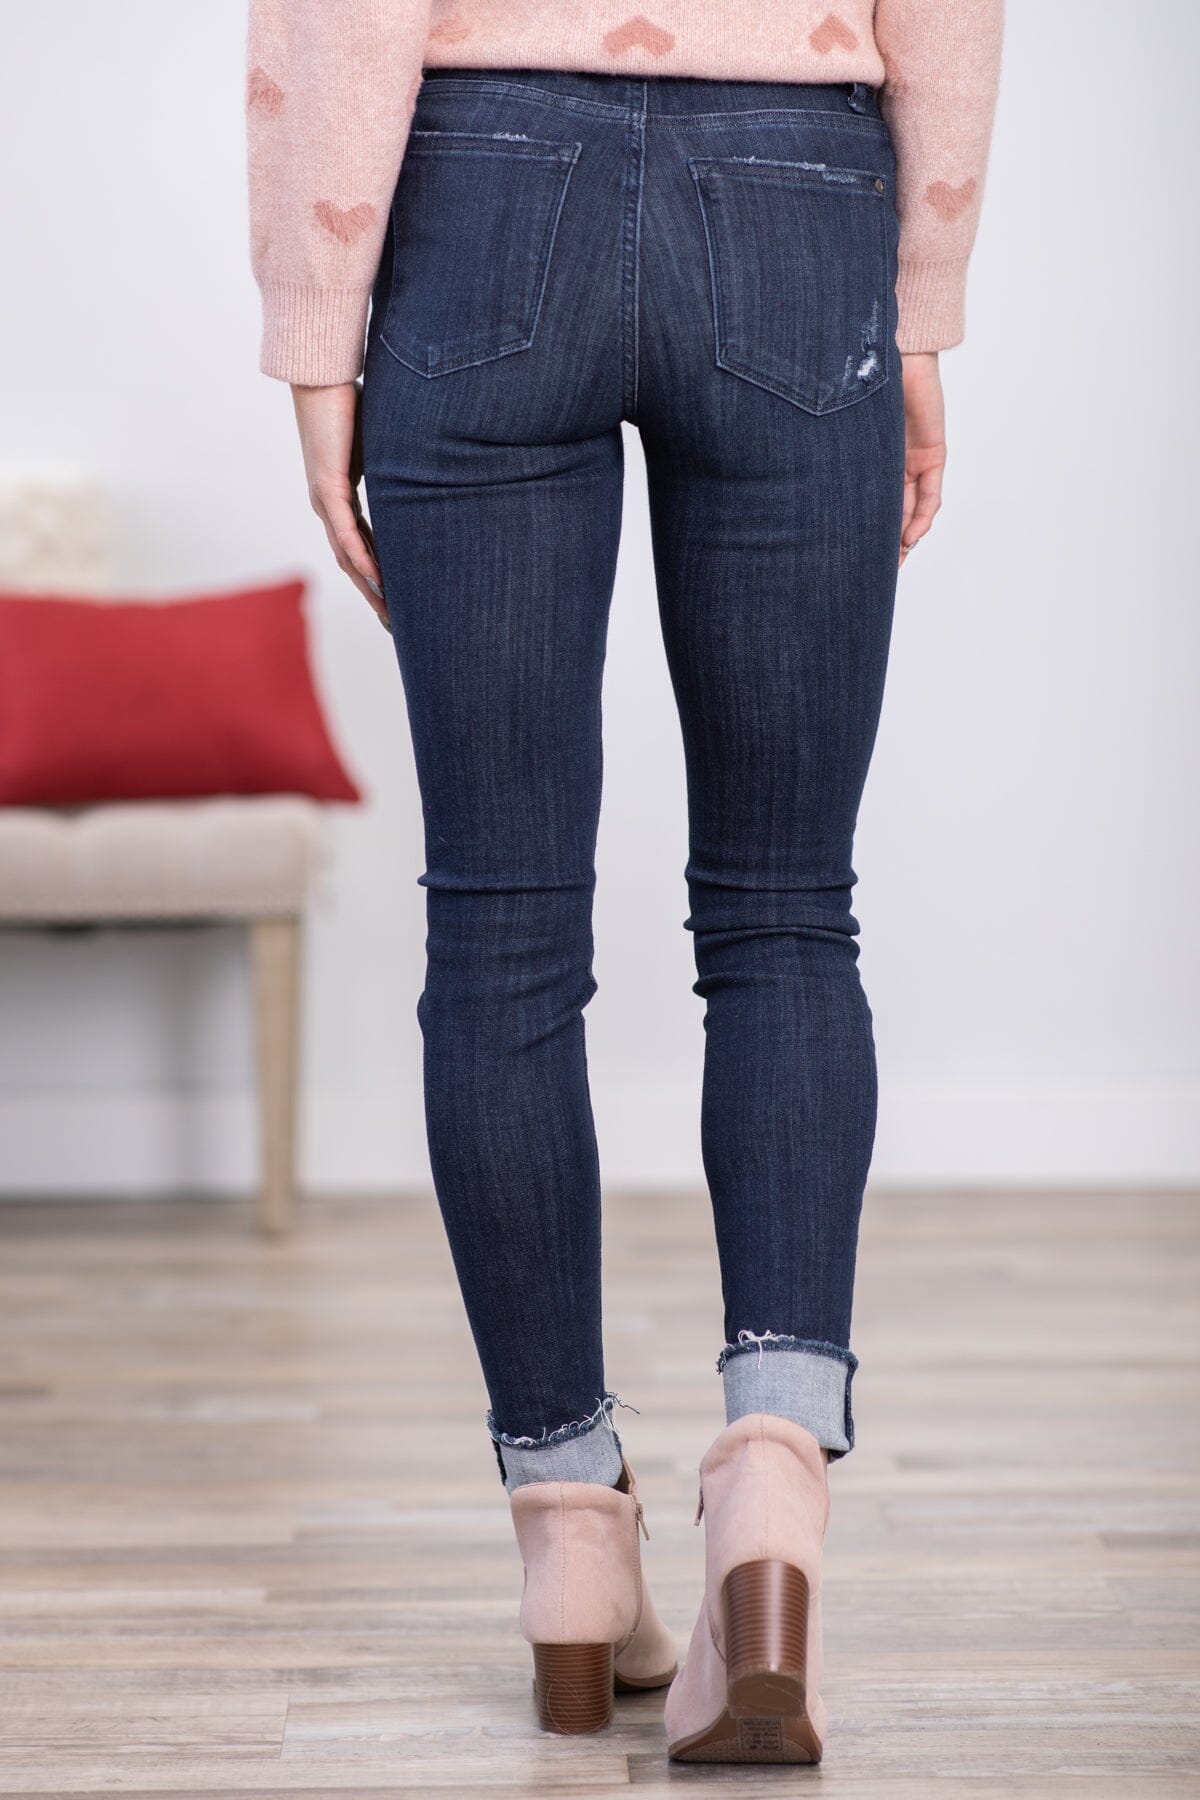 Judy Blue Dark Wash Cuffed Skinny Jeans - Filly Flair